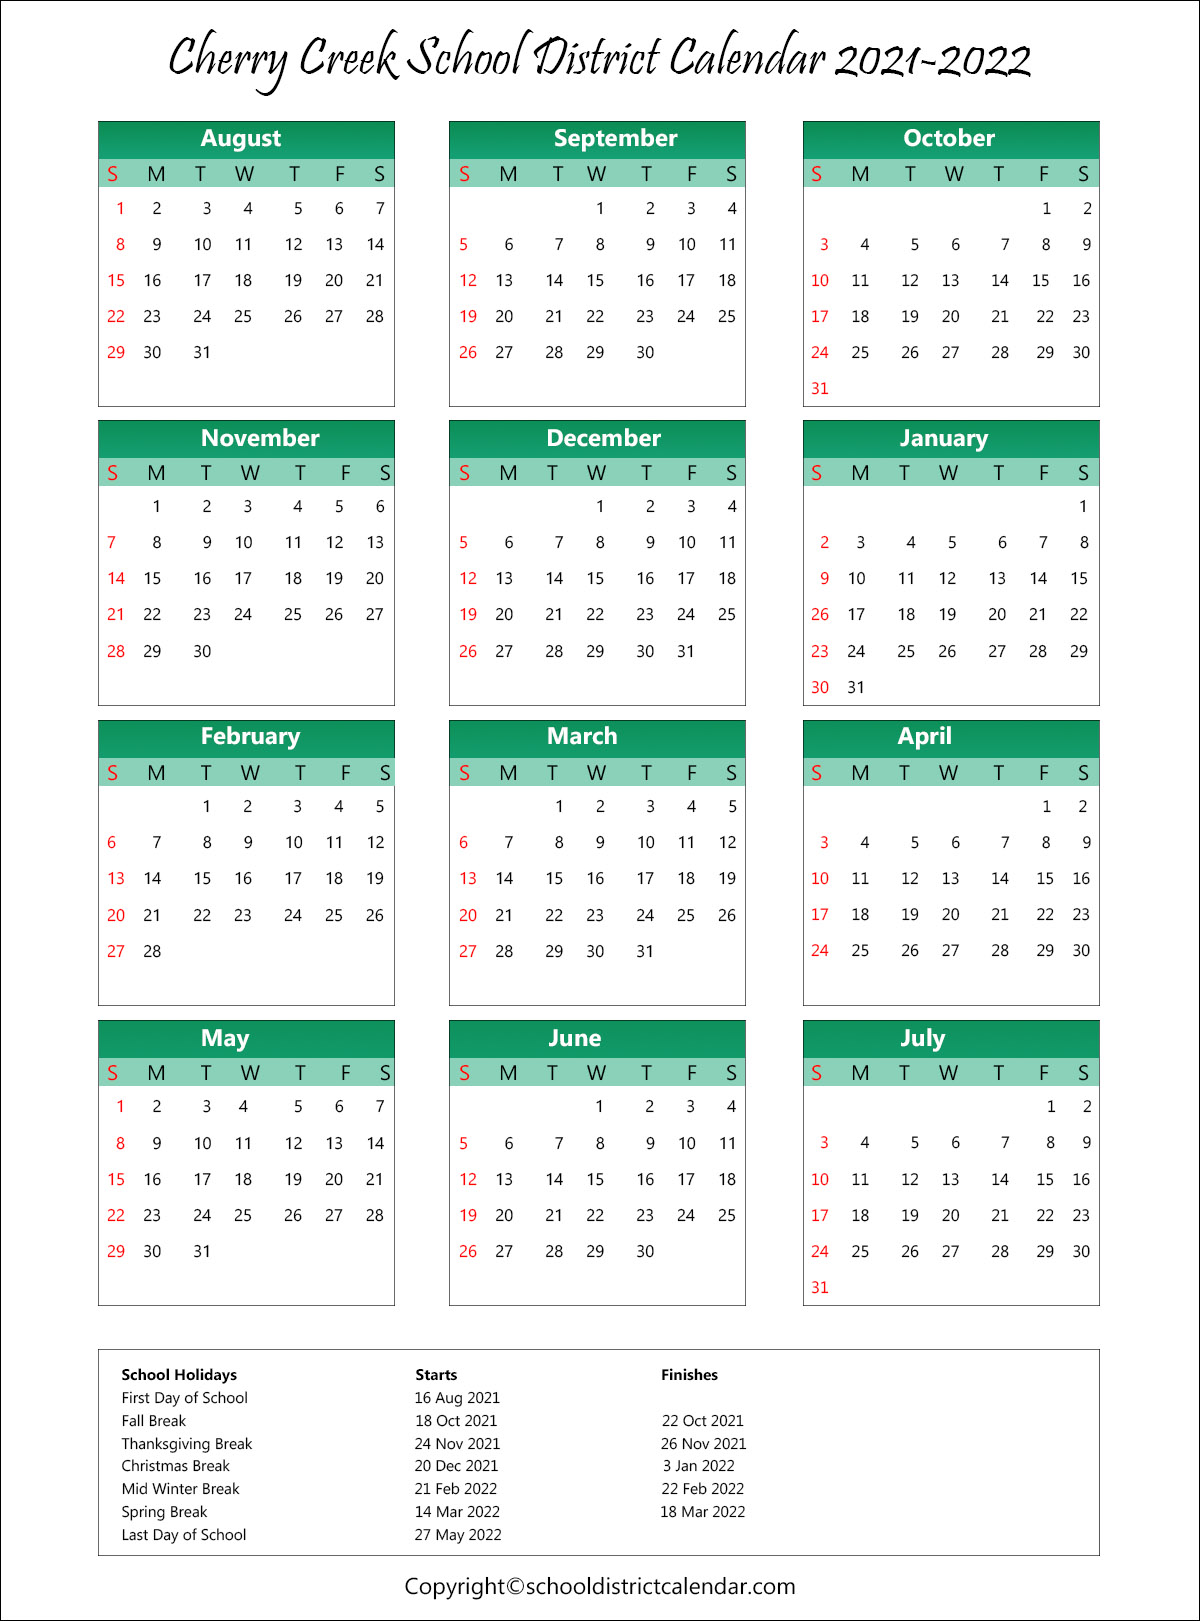 School Calendar For Cherry Creek School District Archives School District Calendar